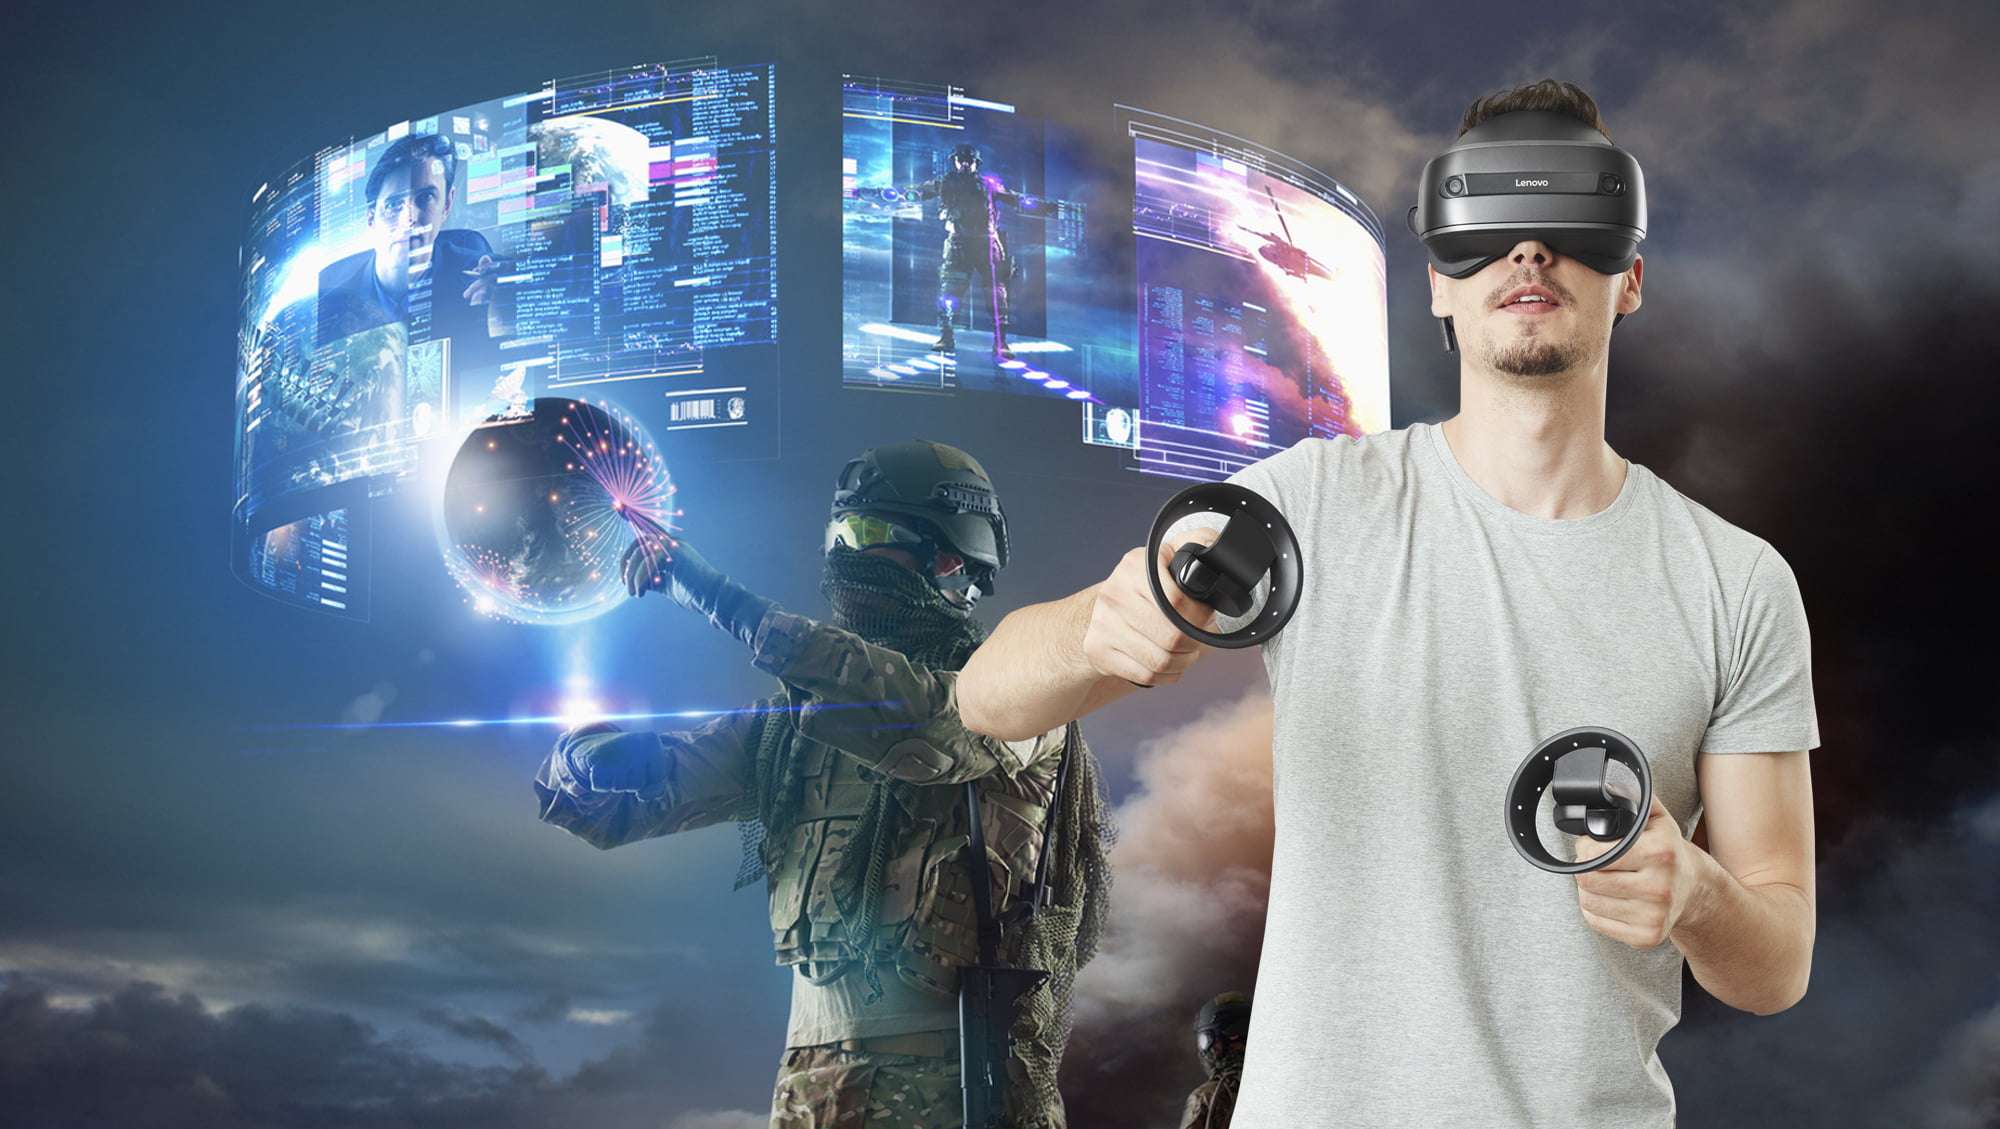 Очки мире игры. Очки виртуальной реальности. Виртуальная реальность 2021. Игровая виртуальная реальность. Виртуальнаяяреальность.